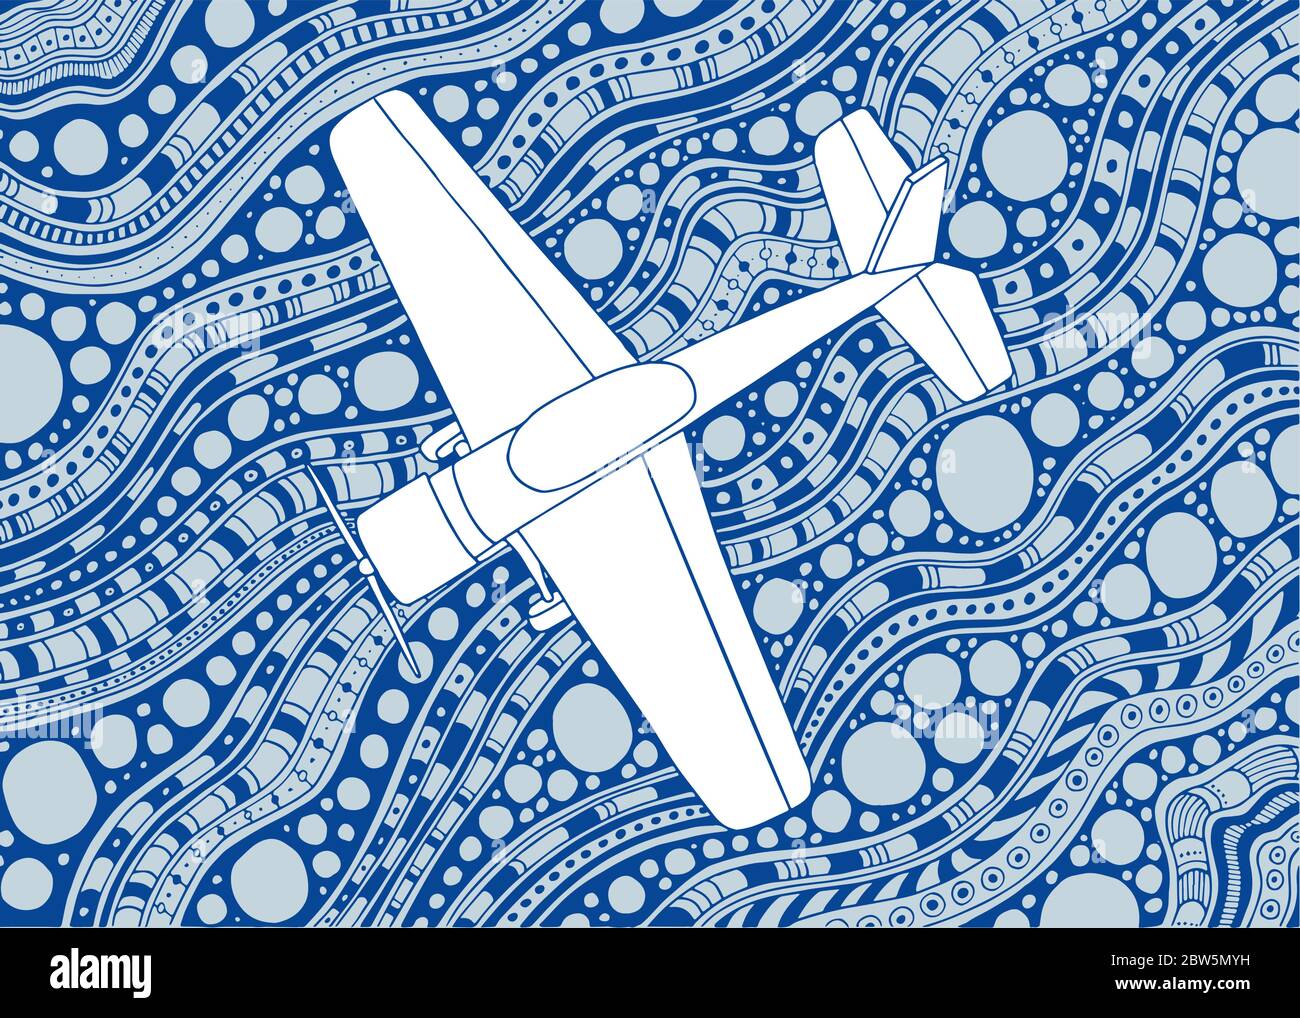 Kleines Flugzeug. Flugzeug handgezeichnete Vektor-Illustration. Business Jet Skizze Zeichnung auf Doodle Hintergrund. Stock Vektor